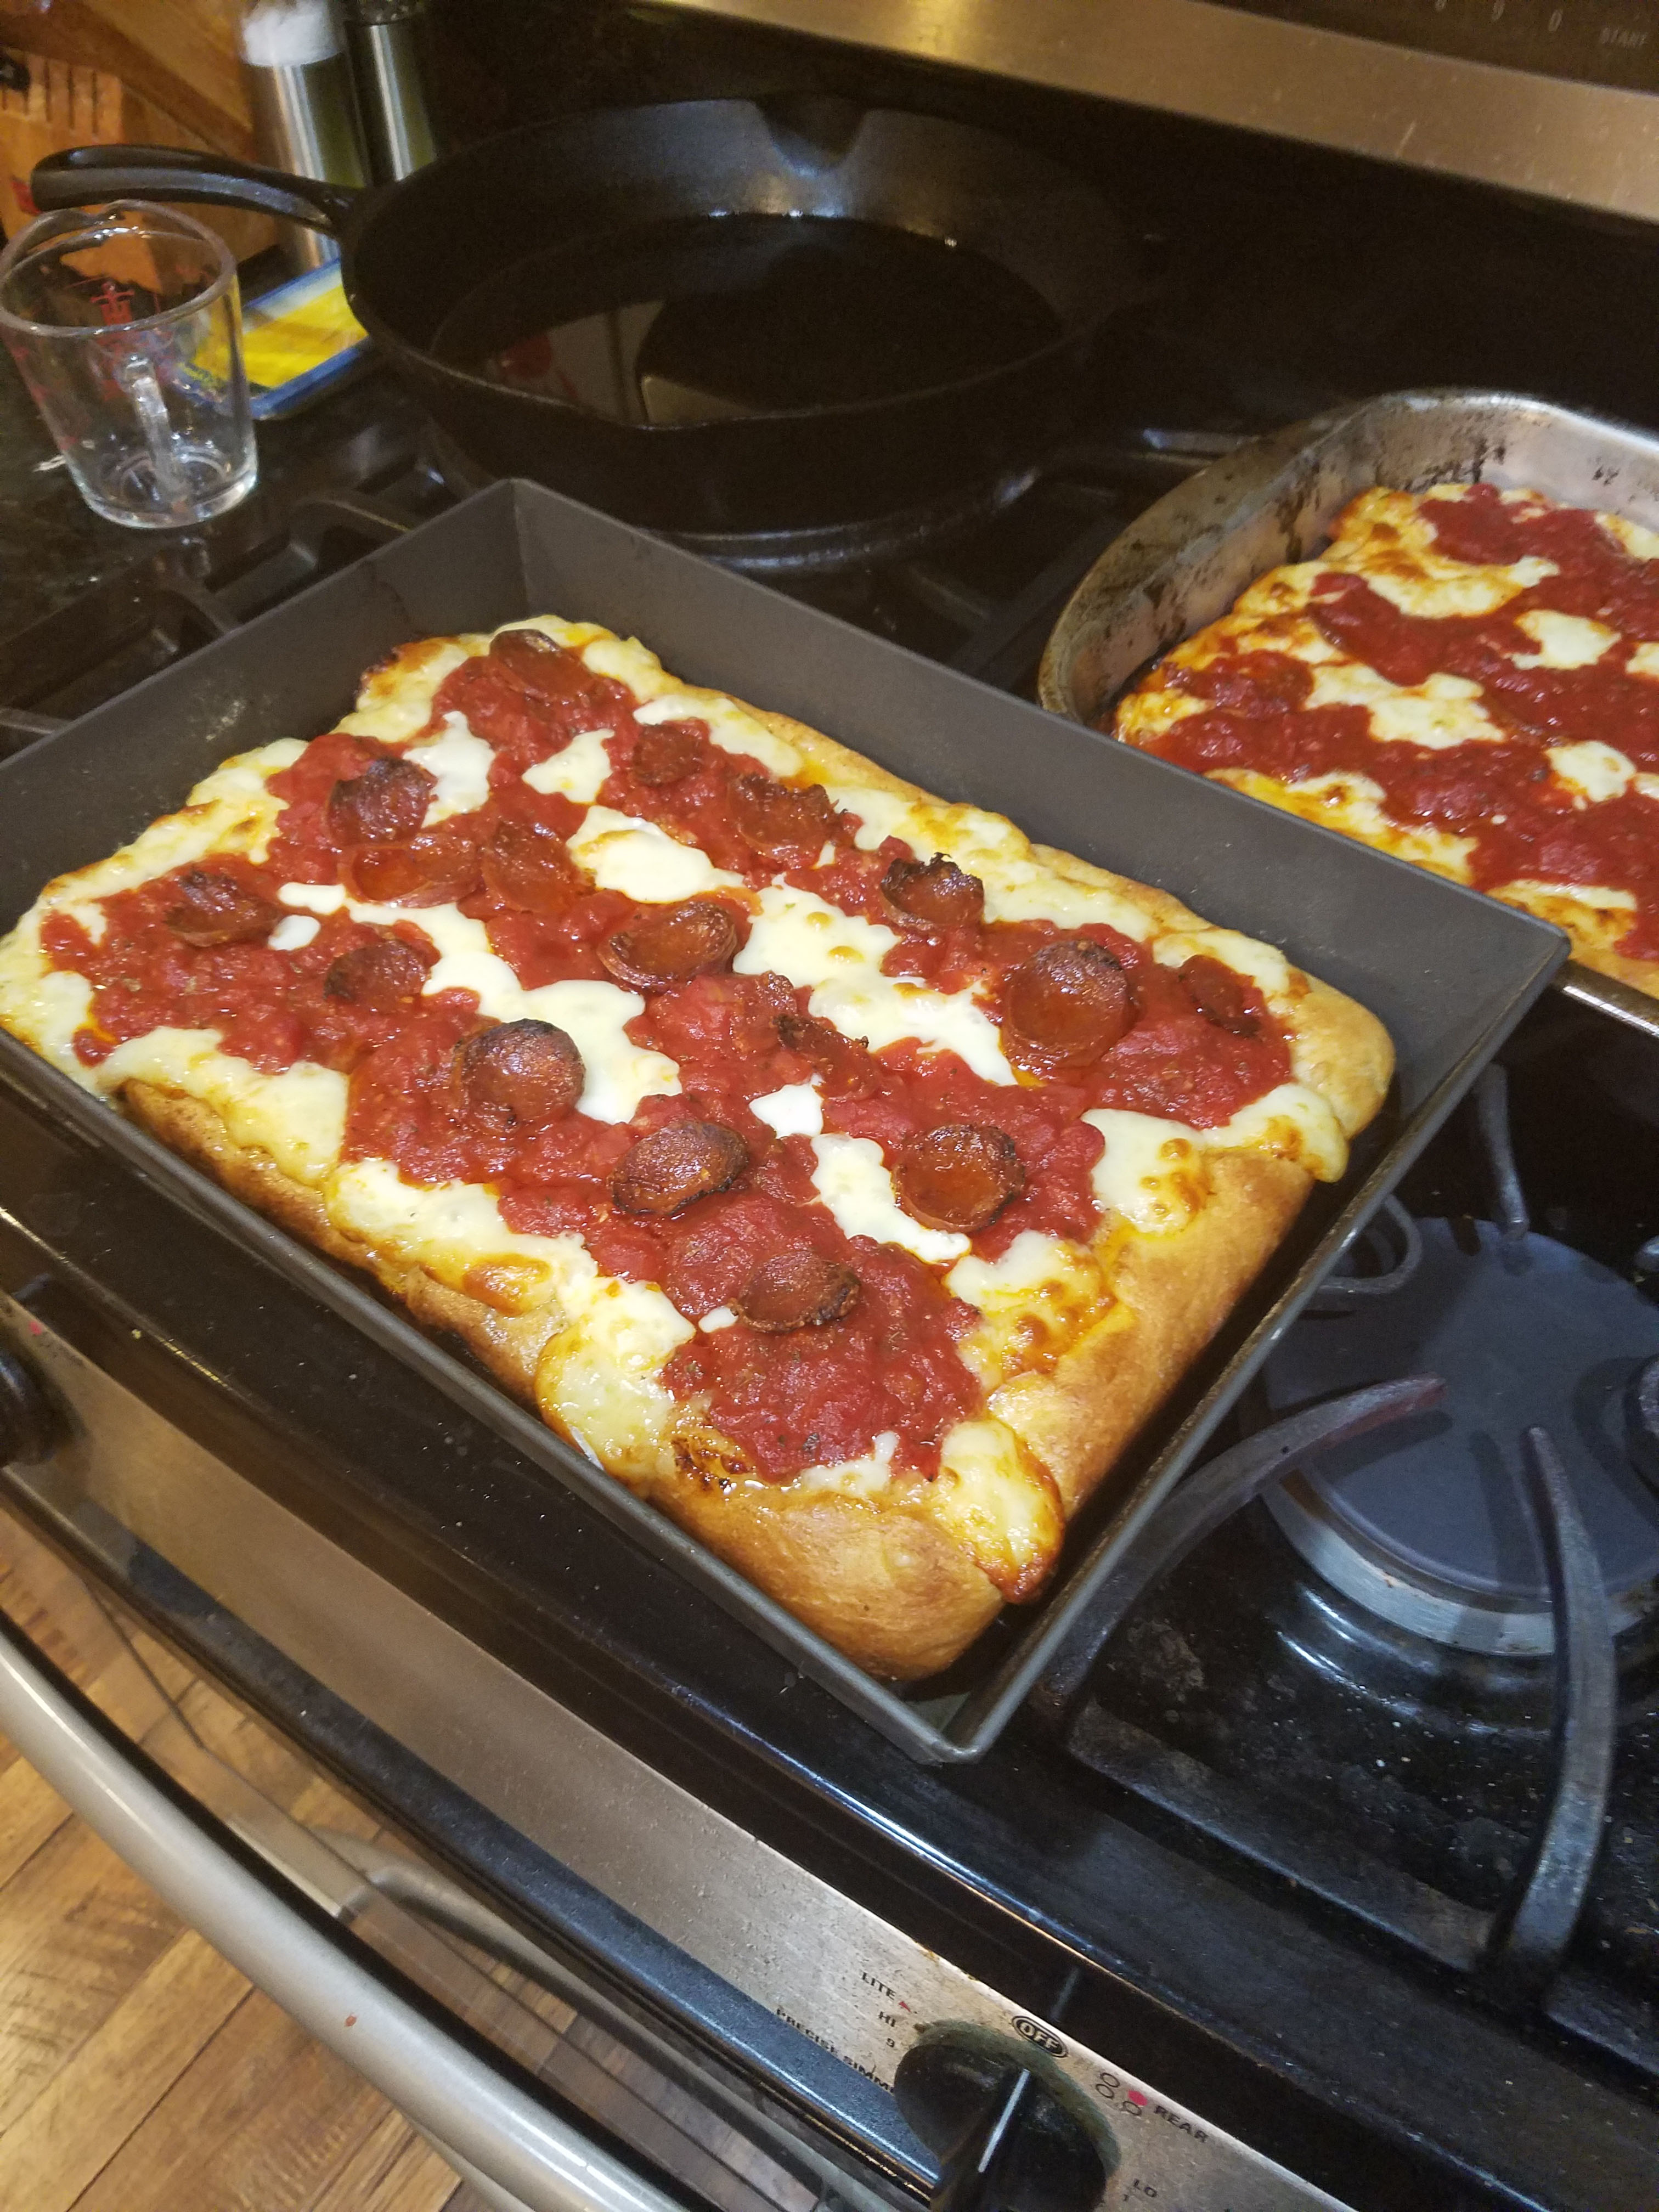 Detroit Style Pizza Pans